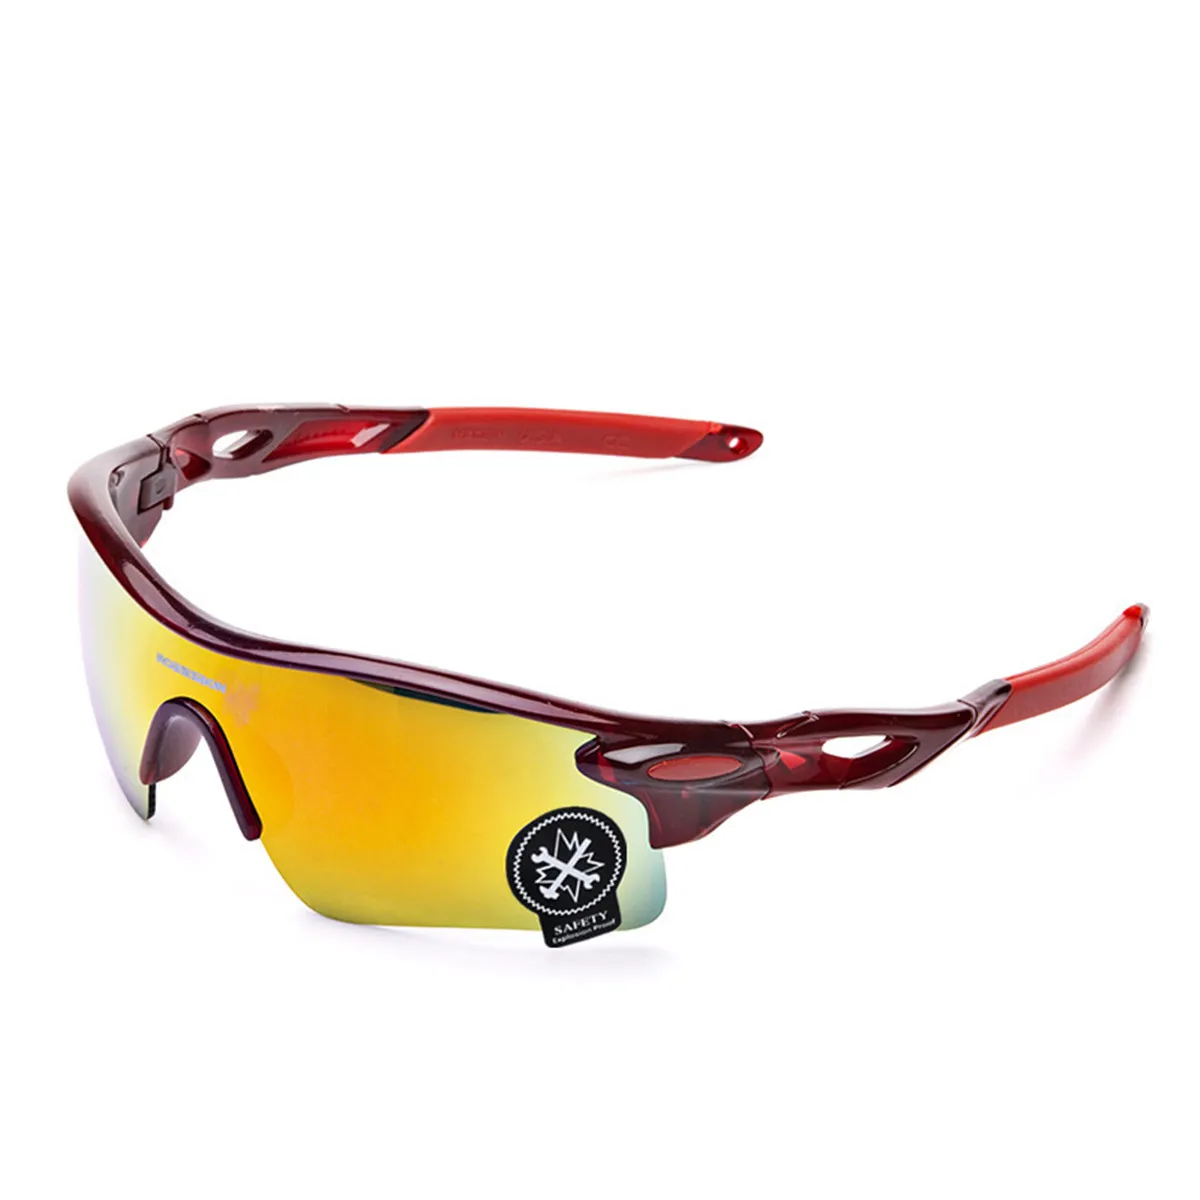 Уличные спортивные велосипедные очки унисекс ветрозащитные велосипедные солнцезащитные очки легкий Водонепроницаемый велосипед очки UV400 очки для велосипедной езды